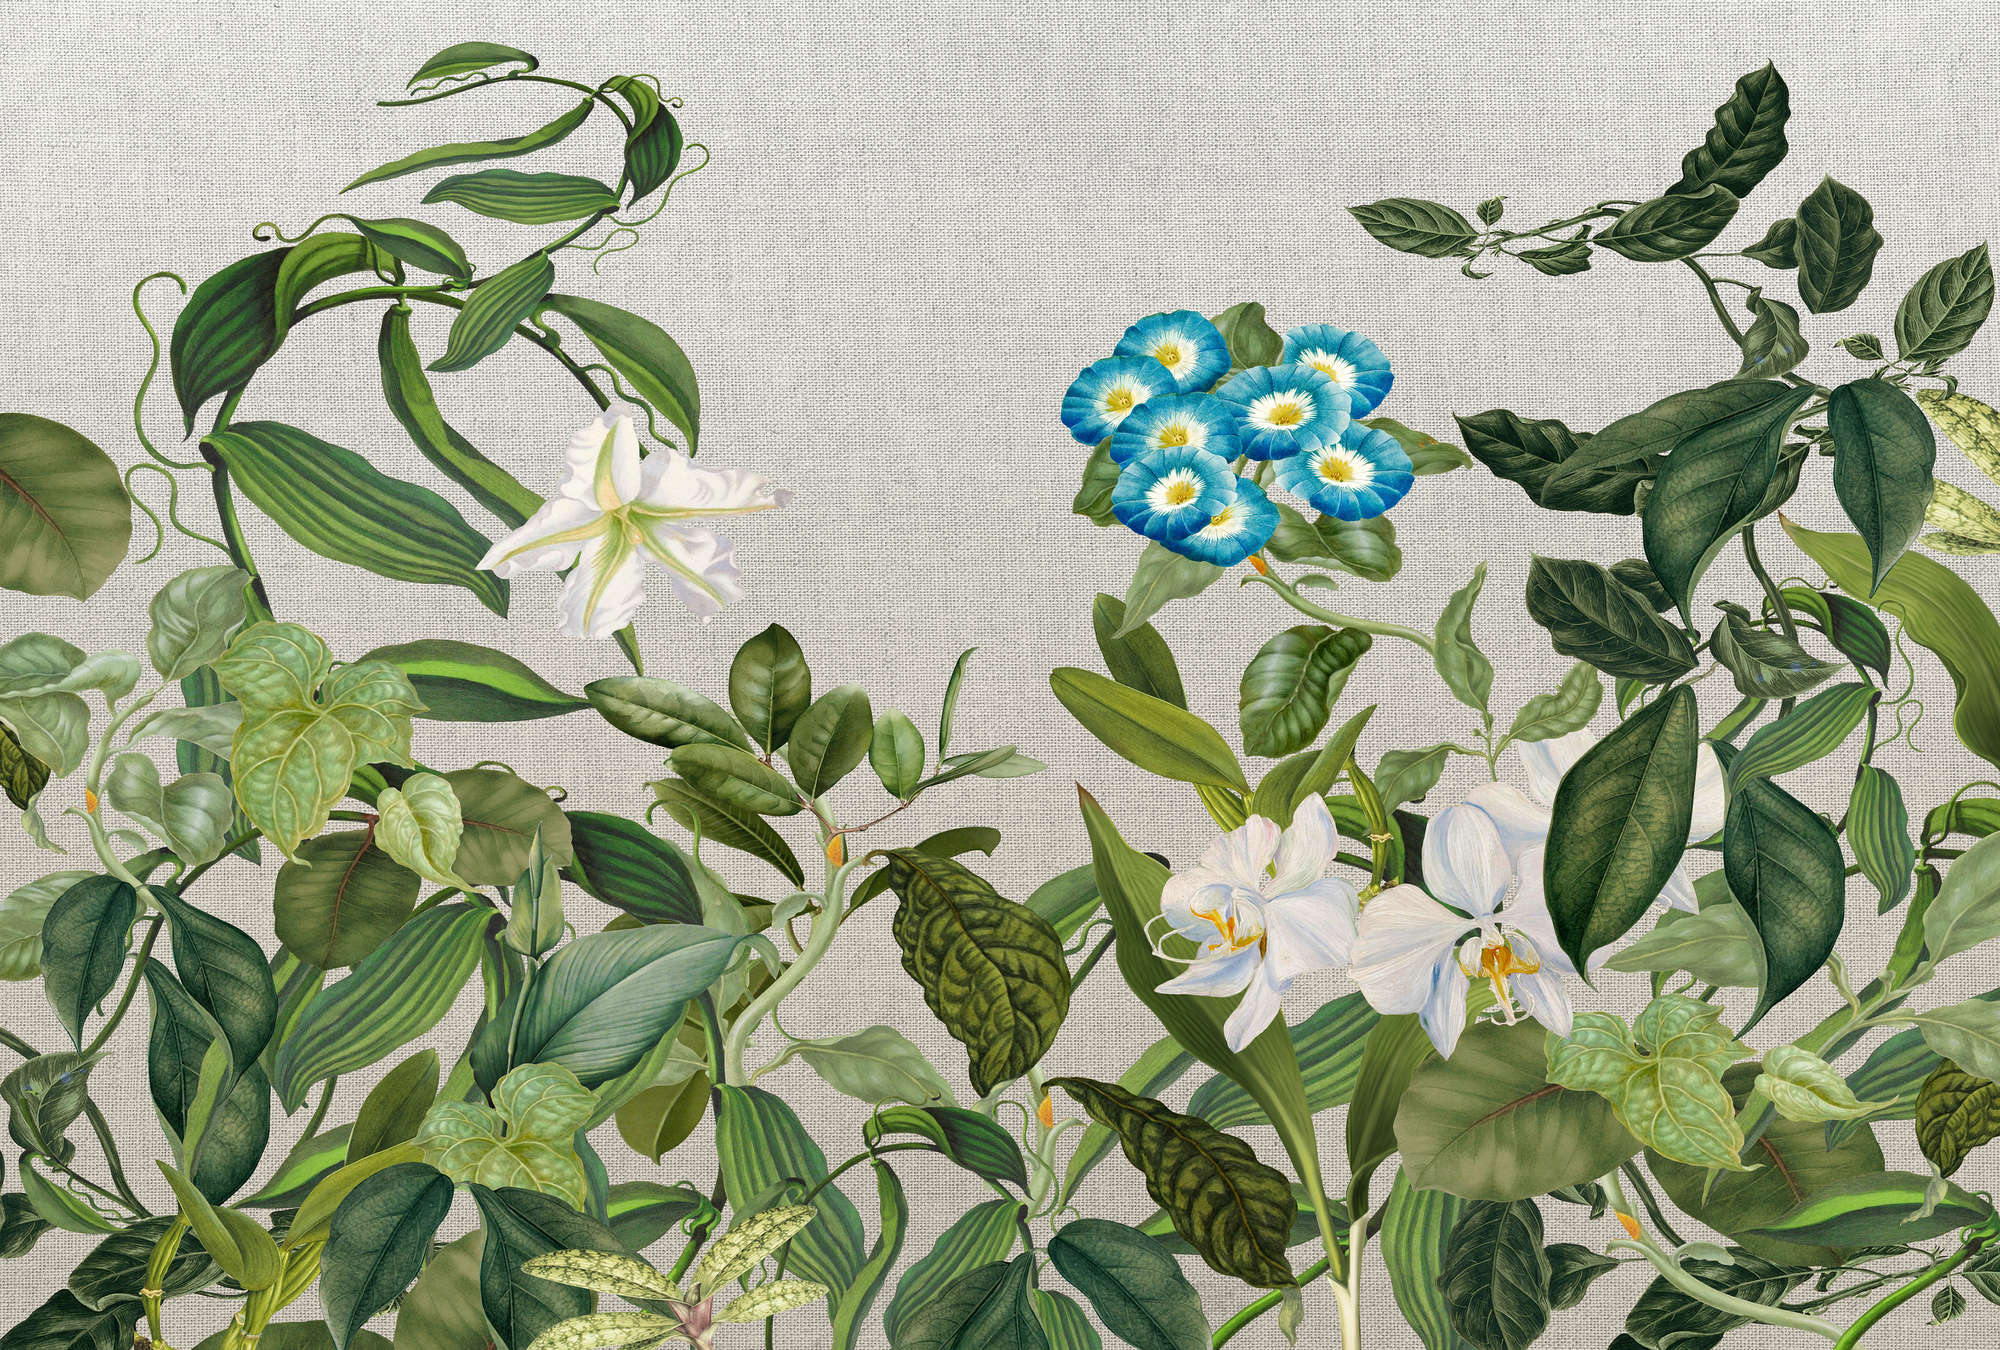             Fototapete mit Blüten, Blättern & Textil-Look – Grün, Grau, Blau
        